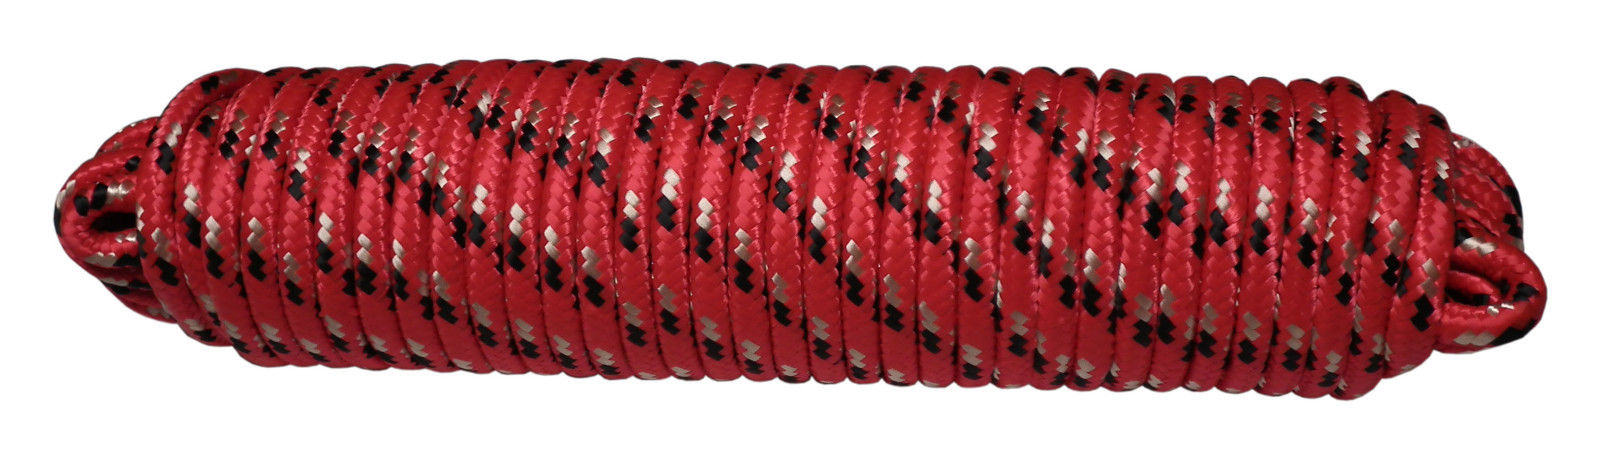 Polypropylene Rope 30M - Red